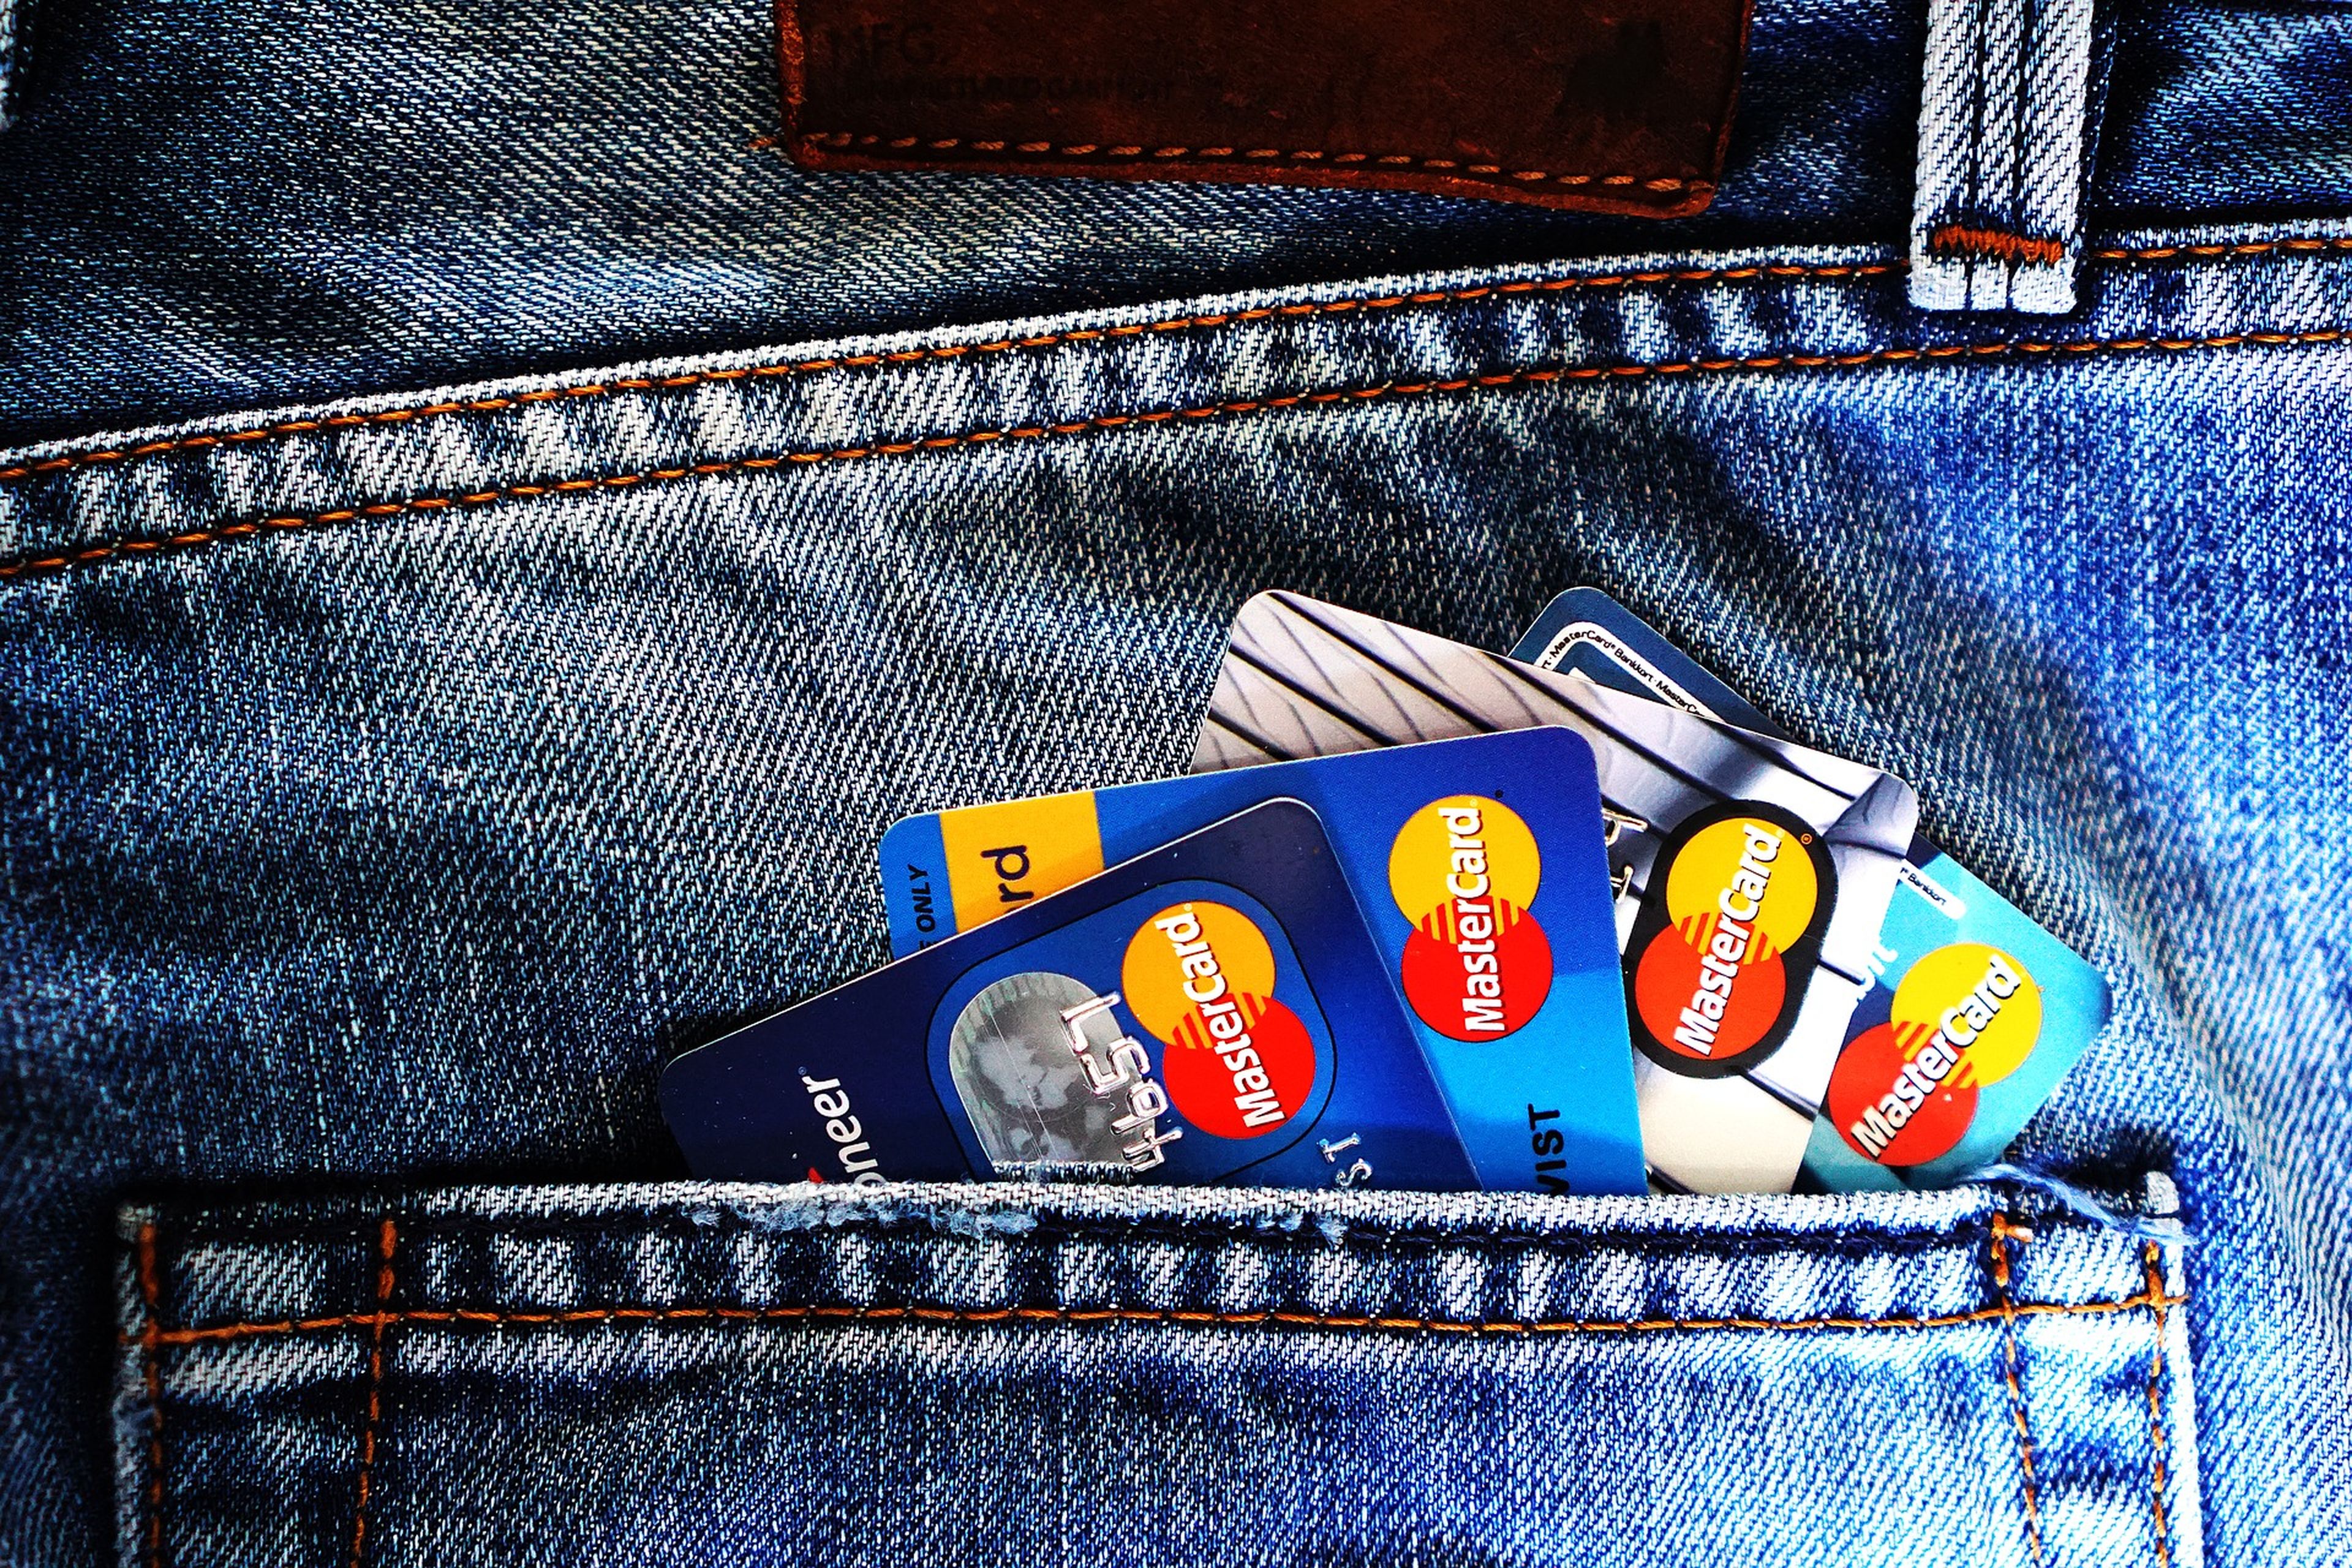 Varias tarjetas de crédito en el bolsillo trasero de unos pantalones vaqueros.